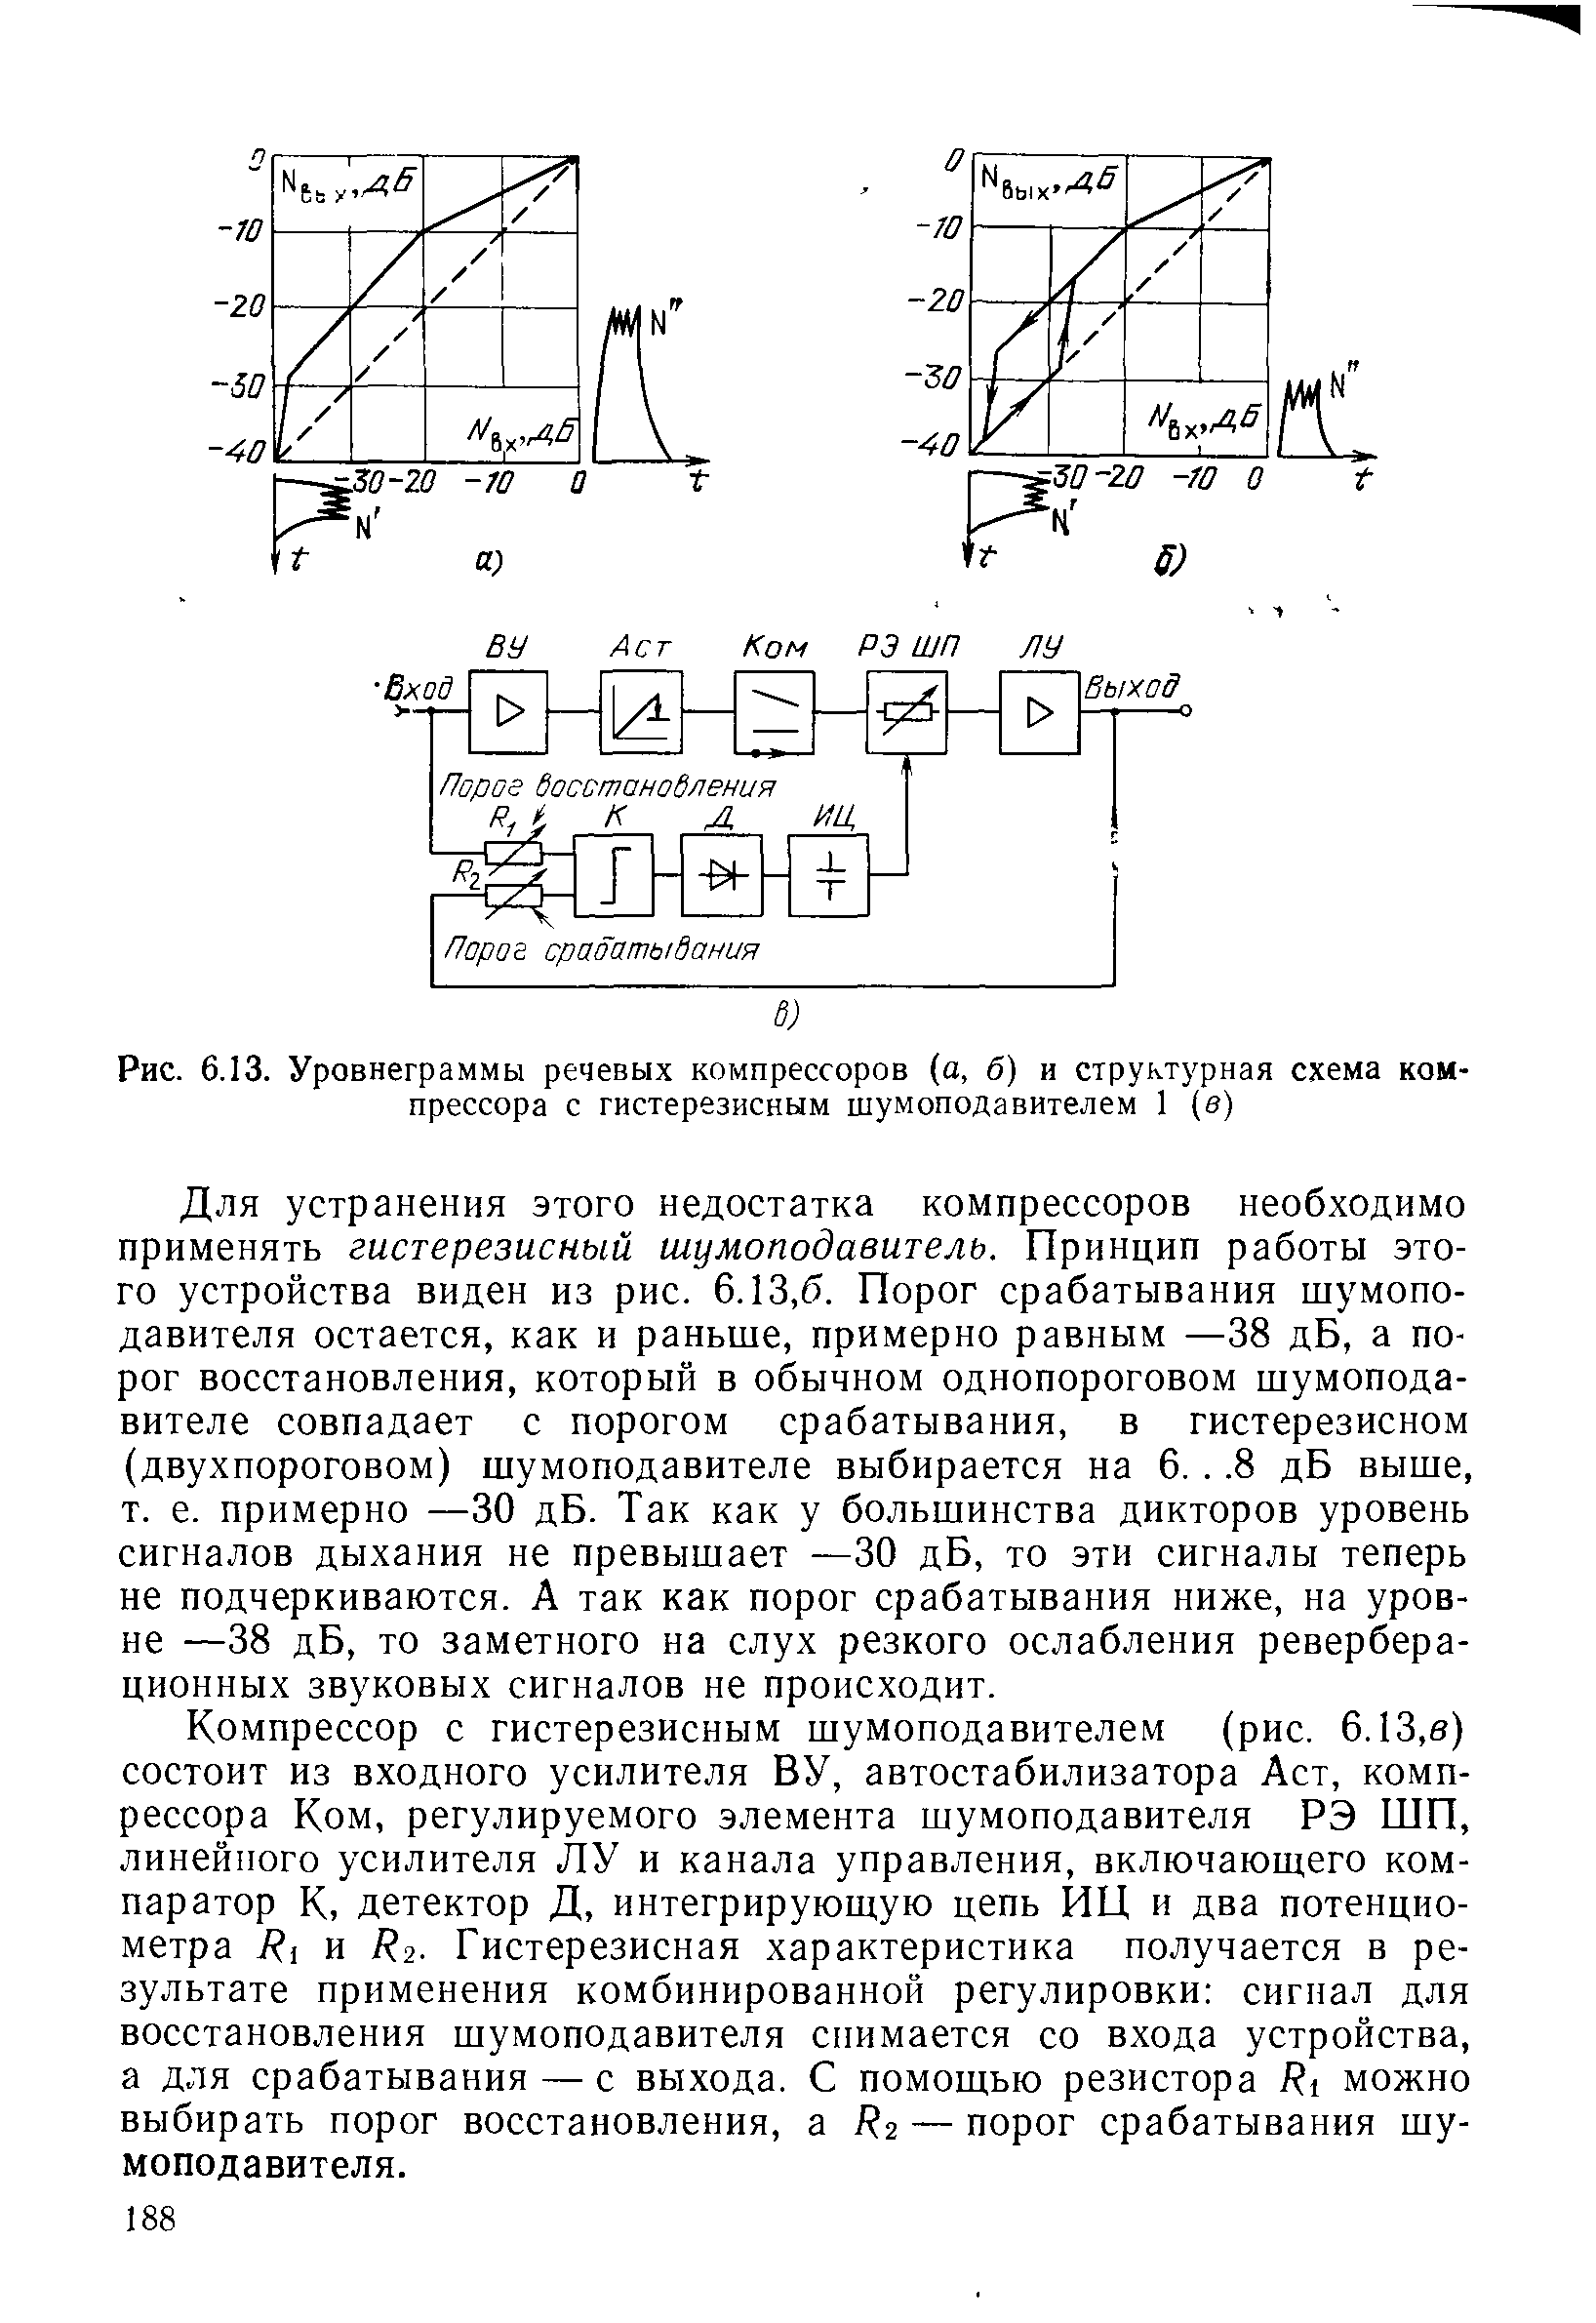 Рис. 6.13. Уровнеграммы речевых компрессоров (а, б) и структурная схема компрессора с гистерезисным шумоподавителем 1 (е)
